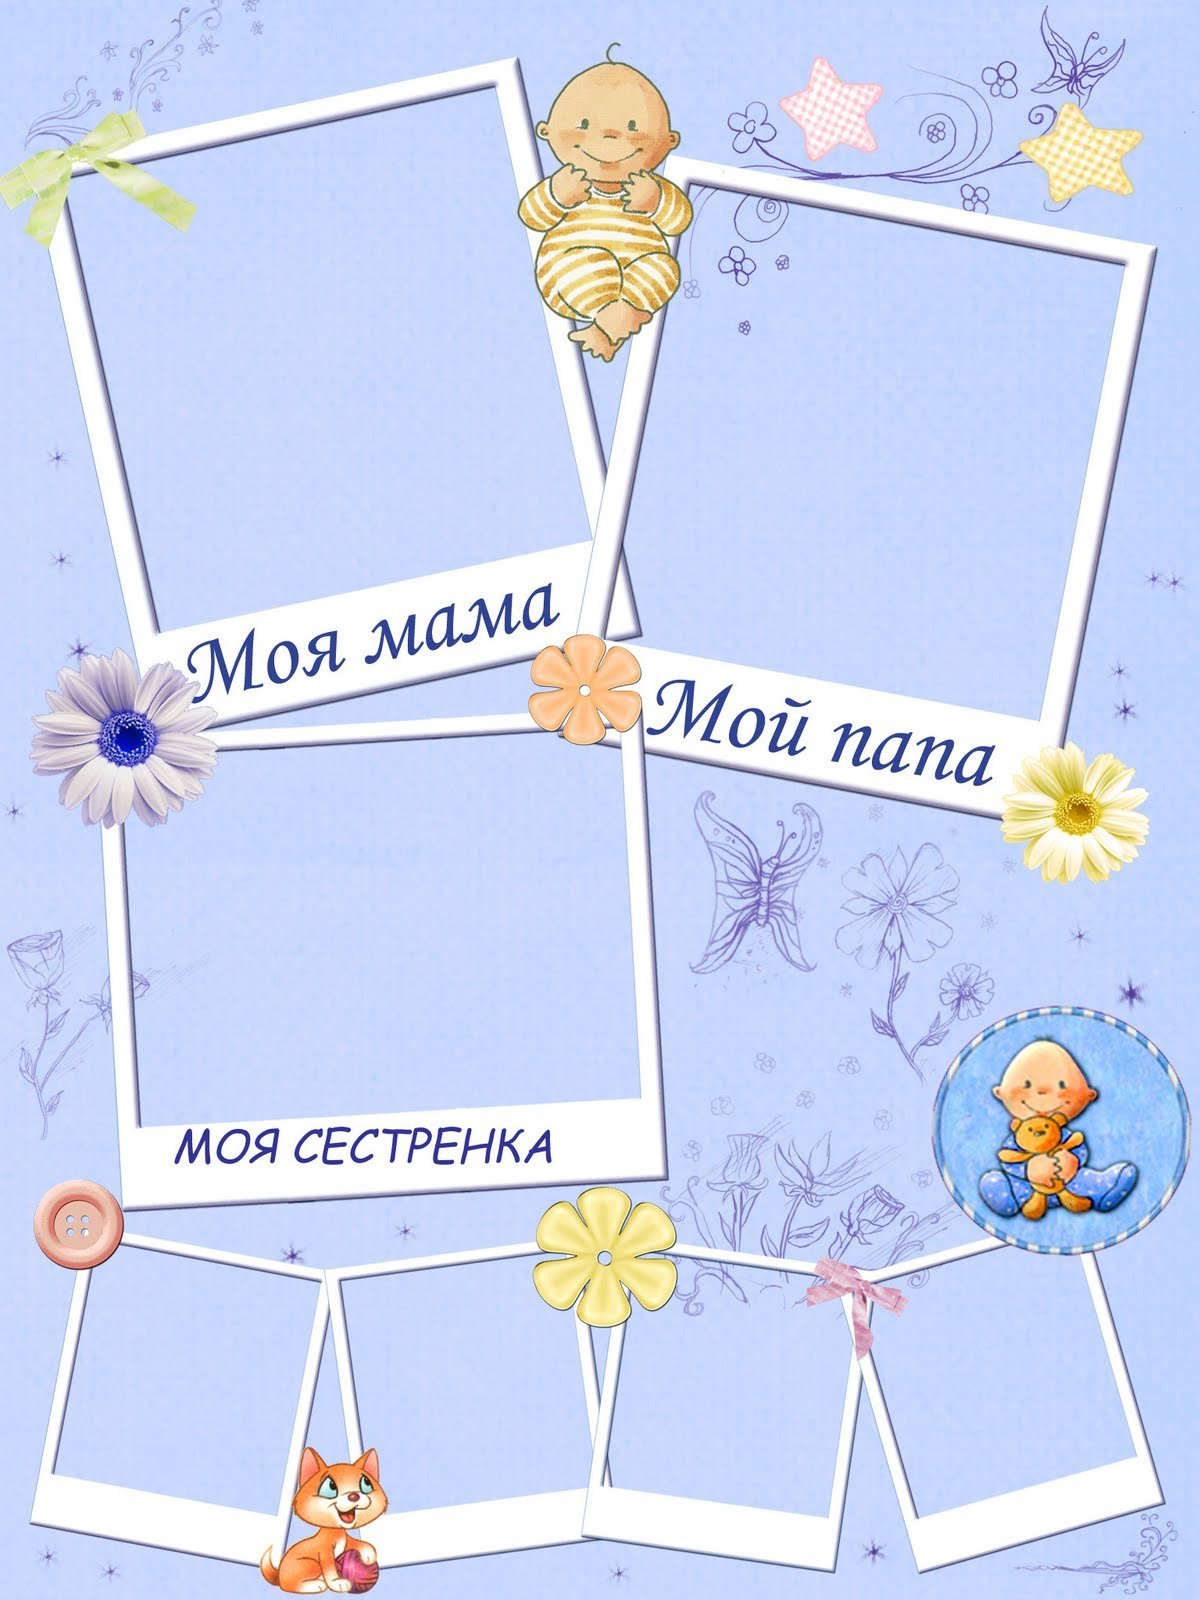 Коллаж моя семья для детского сада шаблоны - фото и картинки manikyrsha.ru